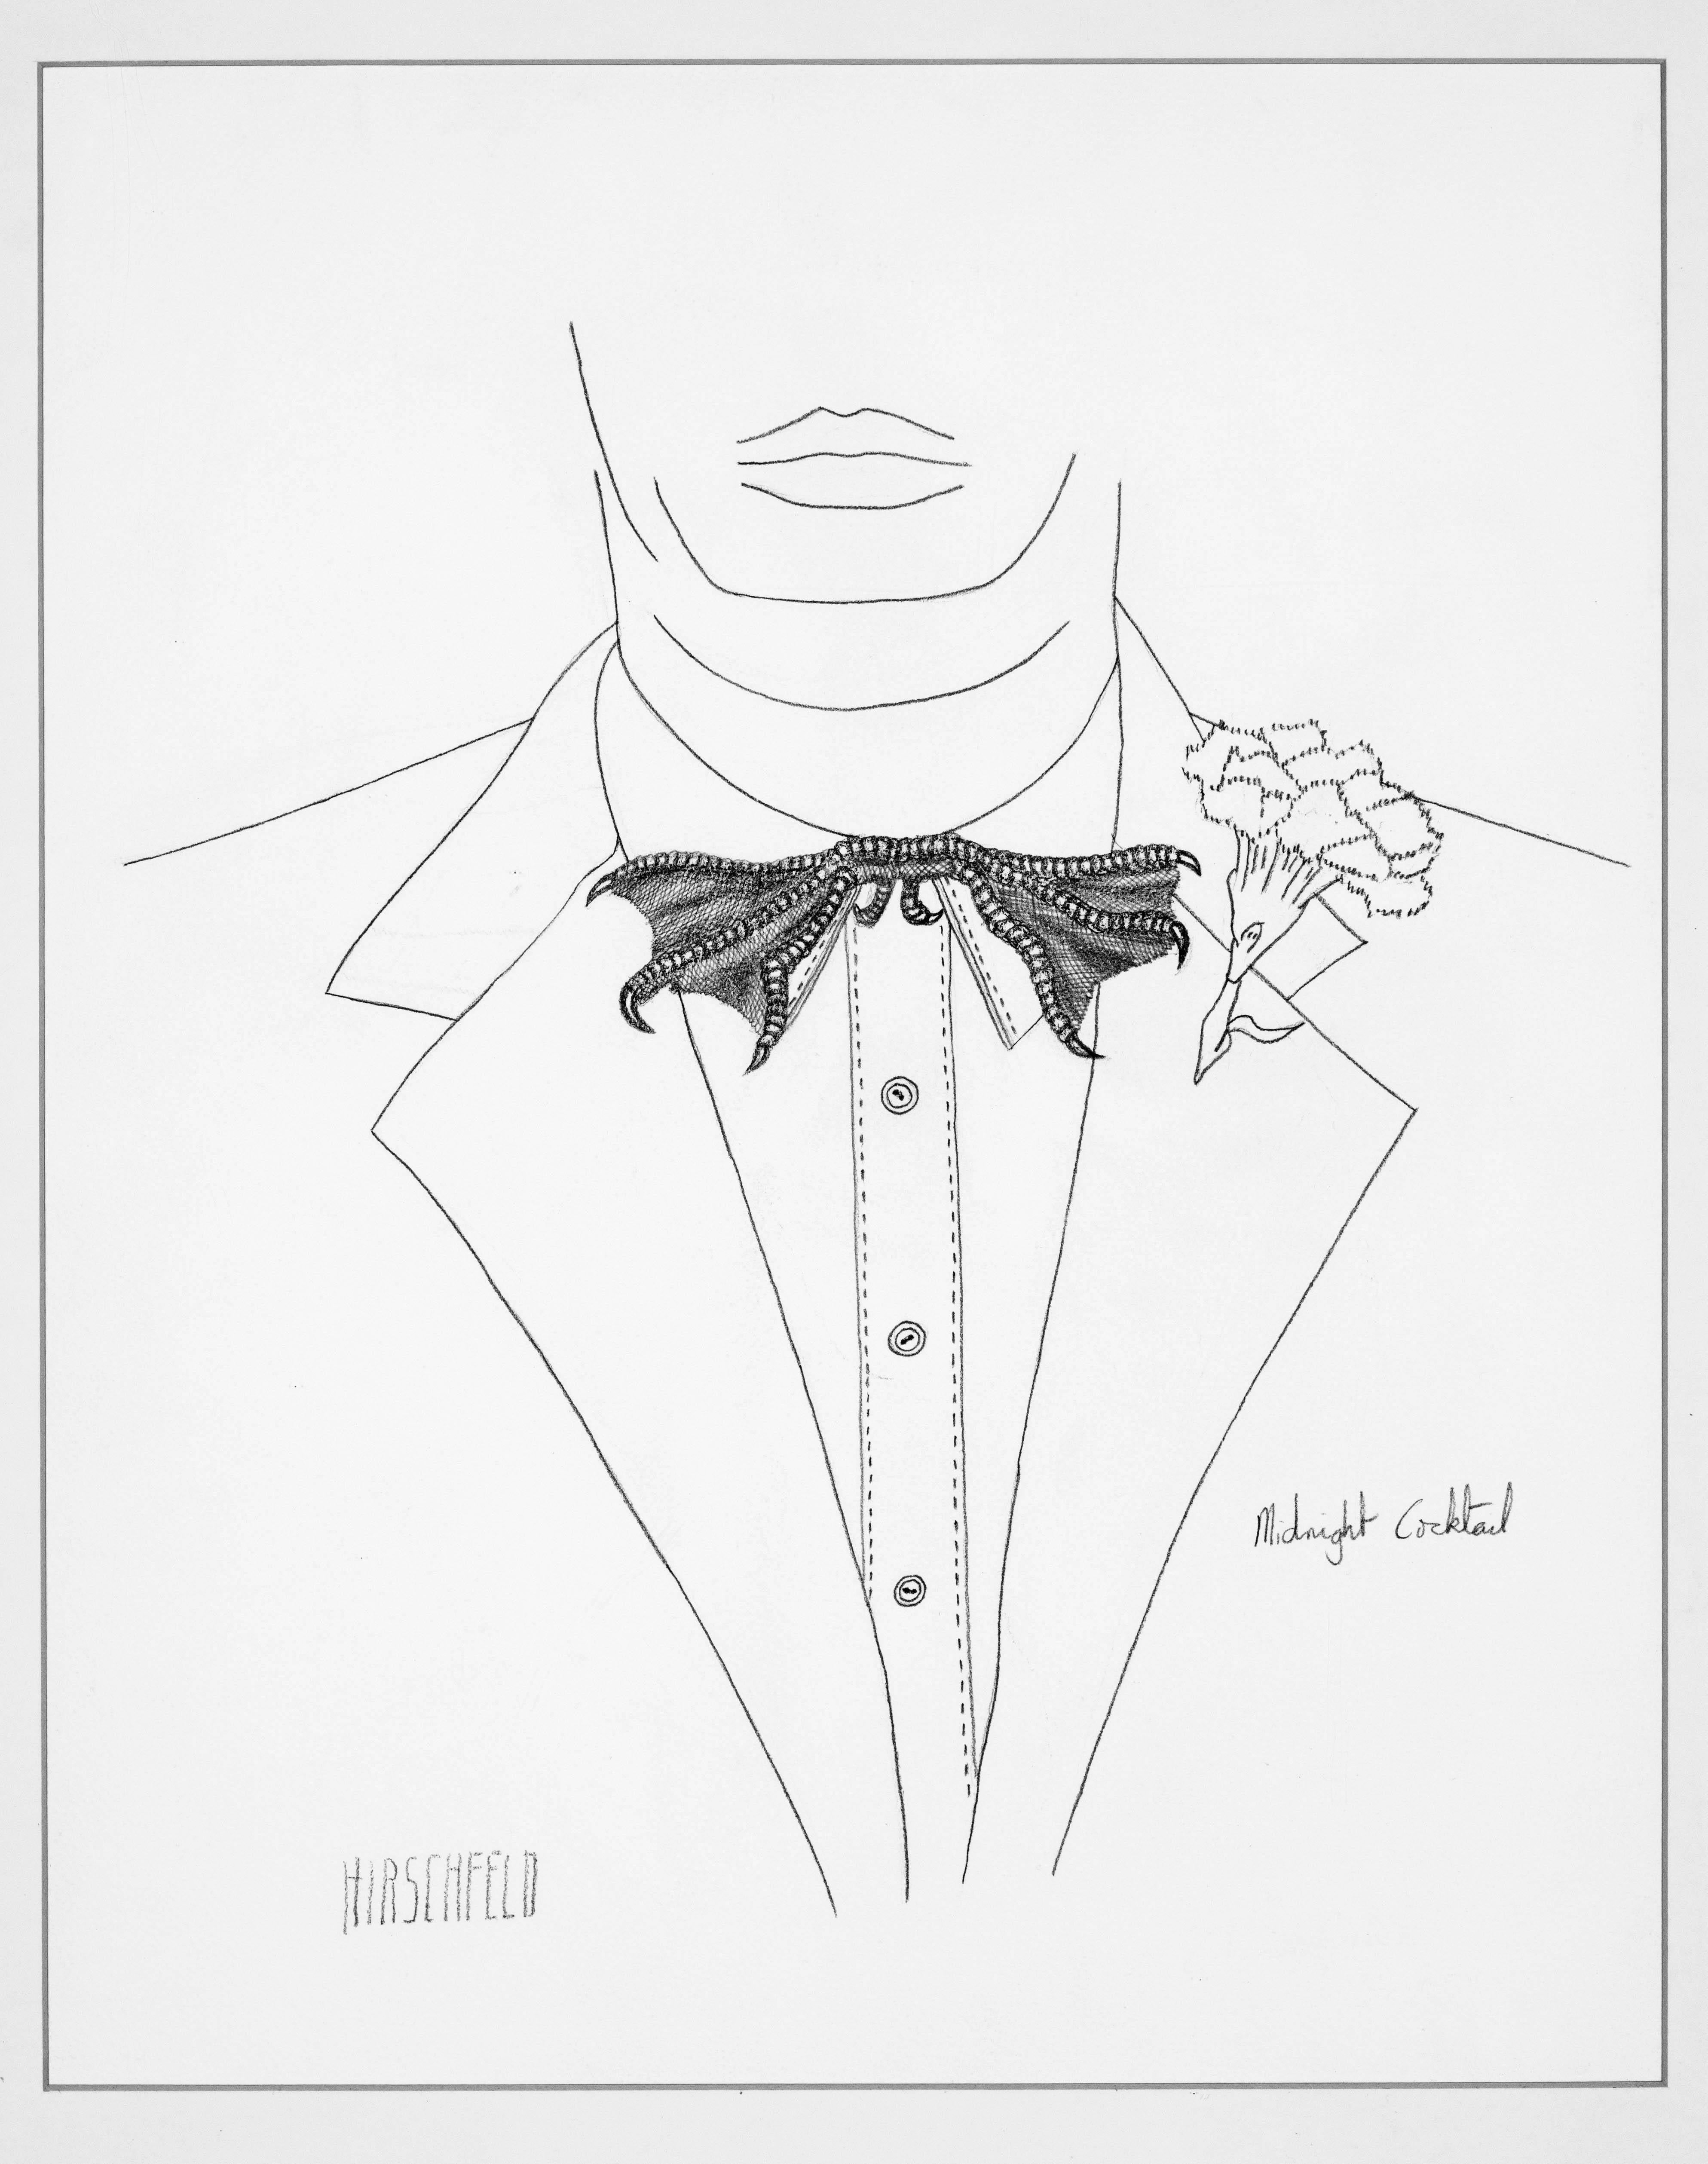 Albert Al Hirschfeld Portrait - MIDNIGHT COCKTAIL